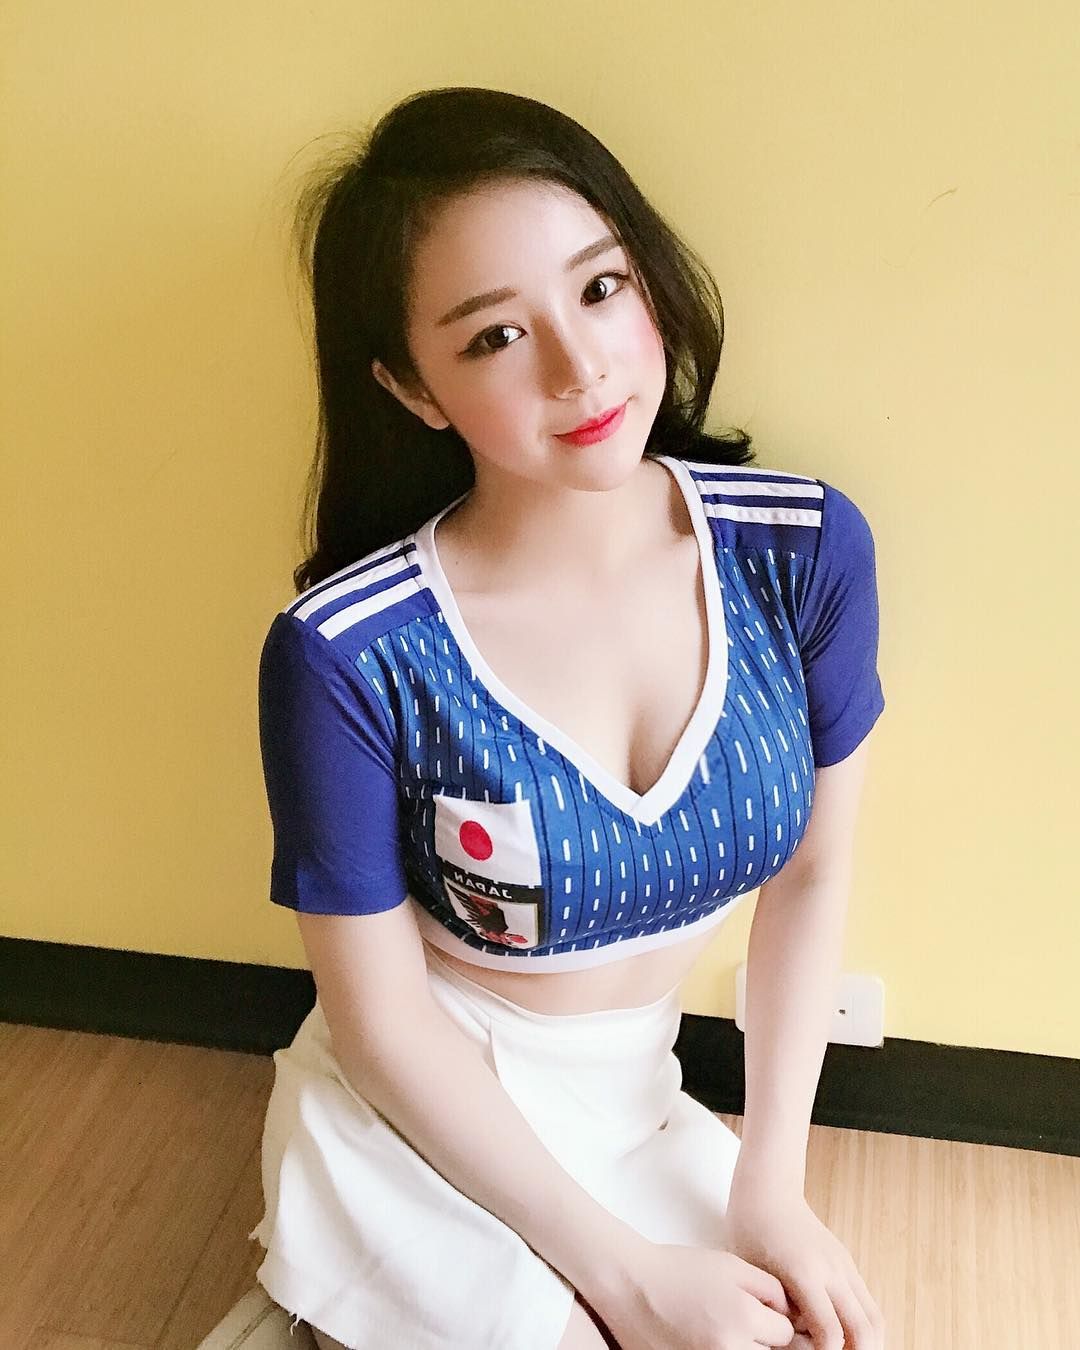 Nguyễn Thuỷ Tiên个人简介关于她实时更新